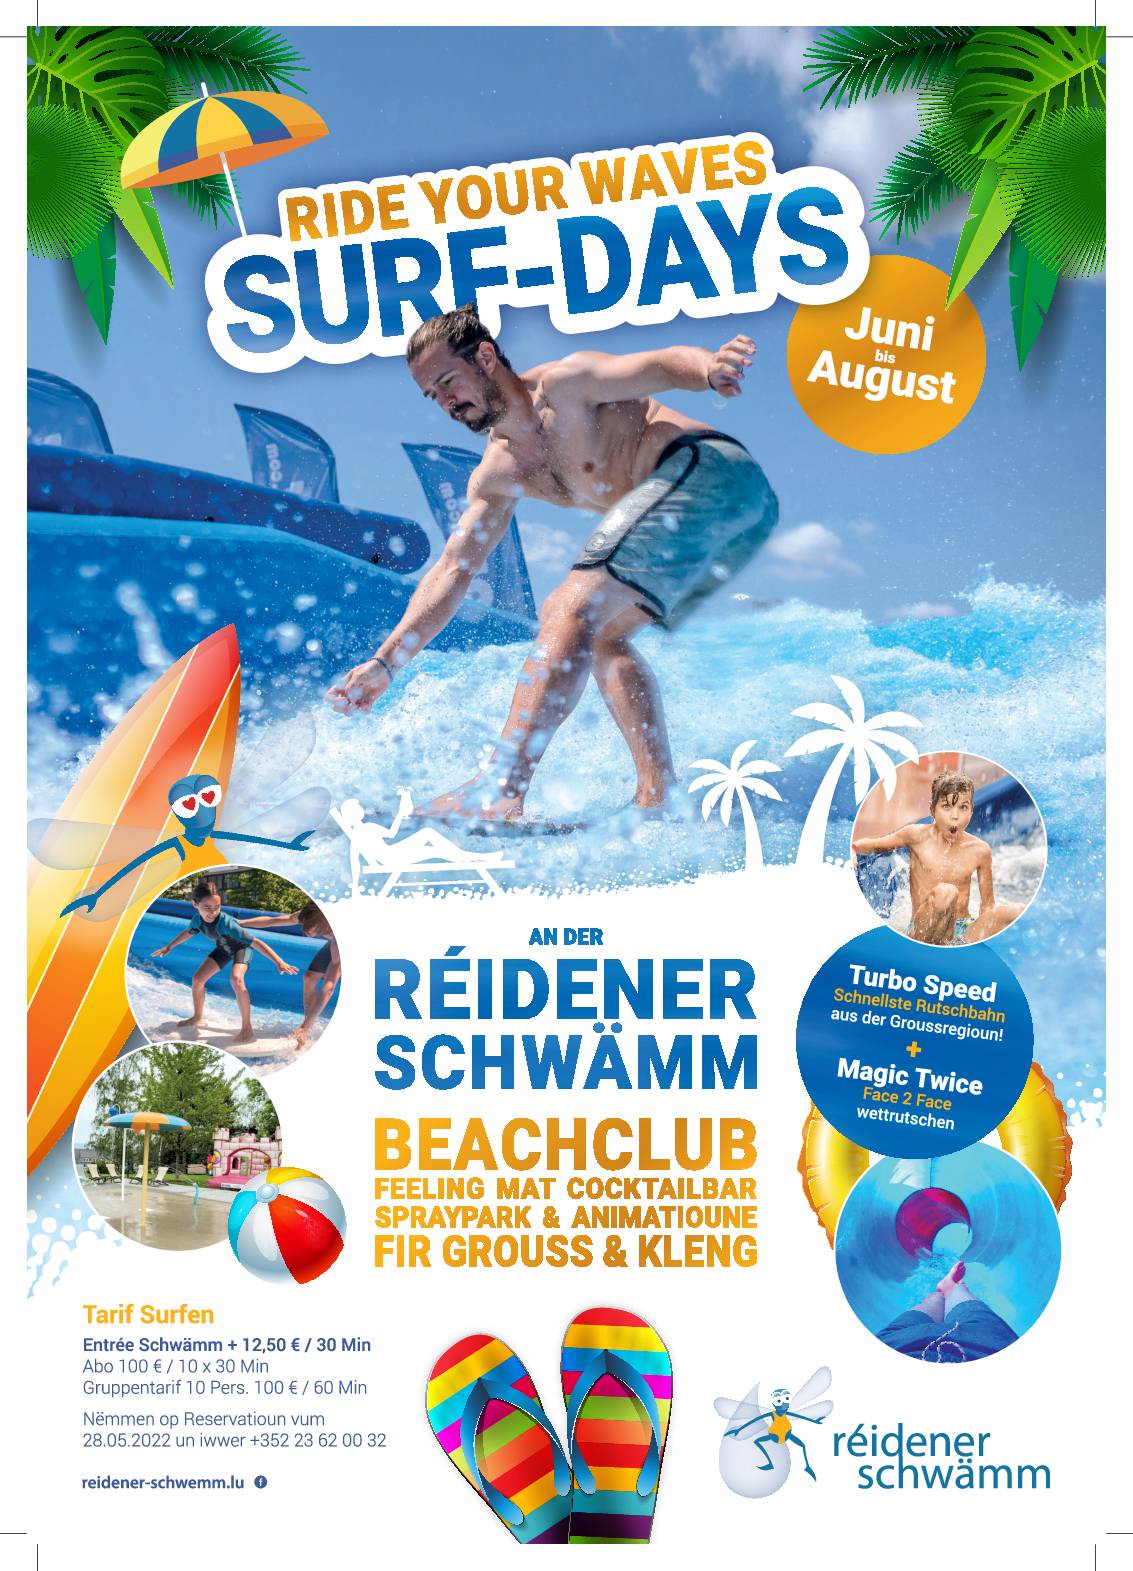 Ride your wave - Surf-Days Réidener Schwämm - juin à août 2022